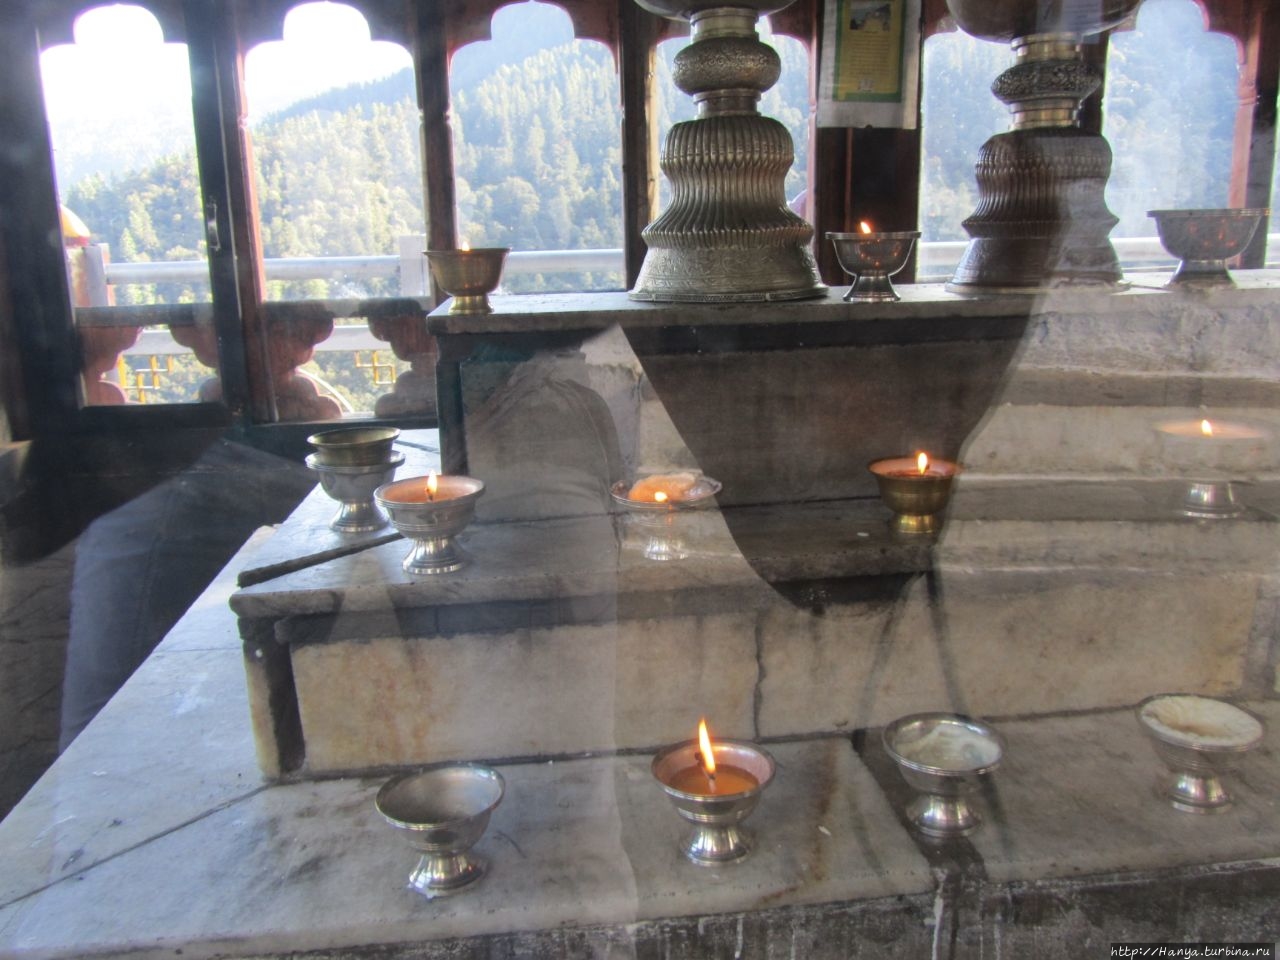 Монастырь Chari Goemba Тхимпху, Бутан